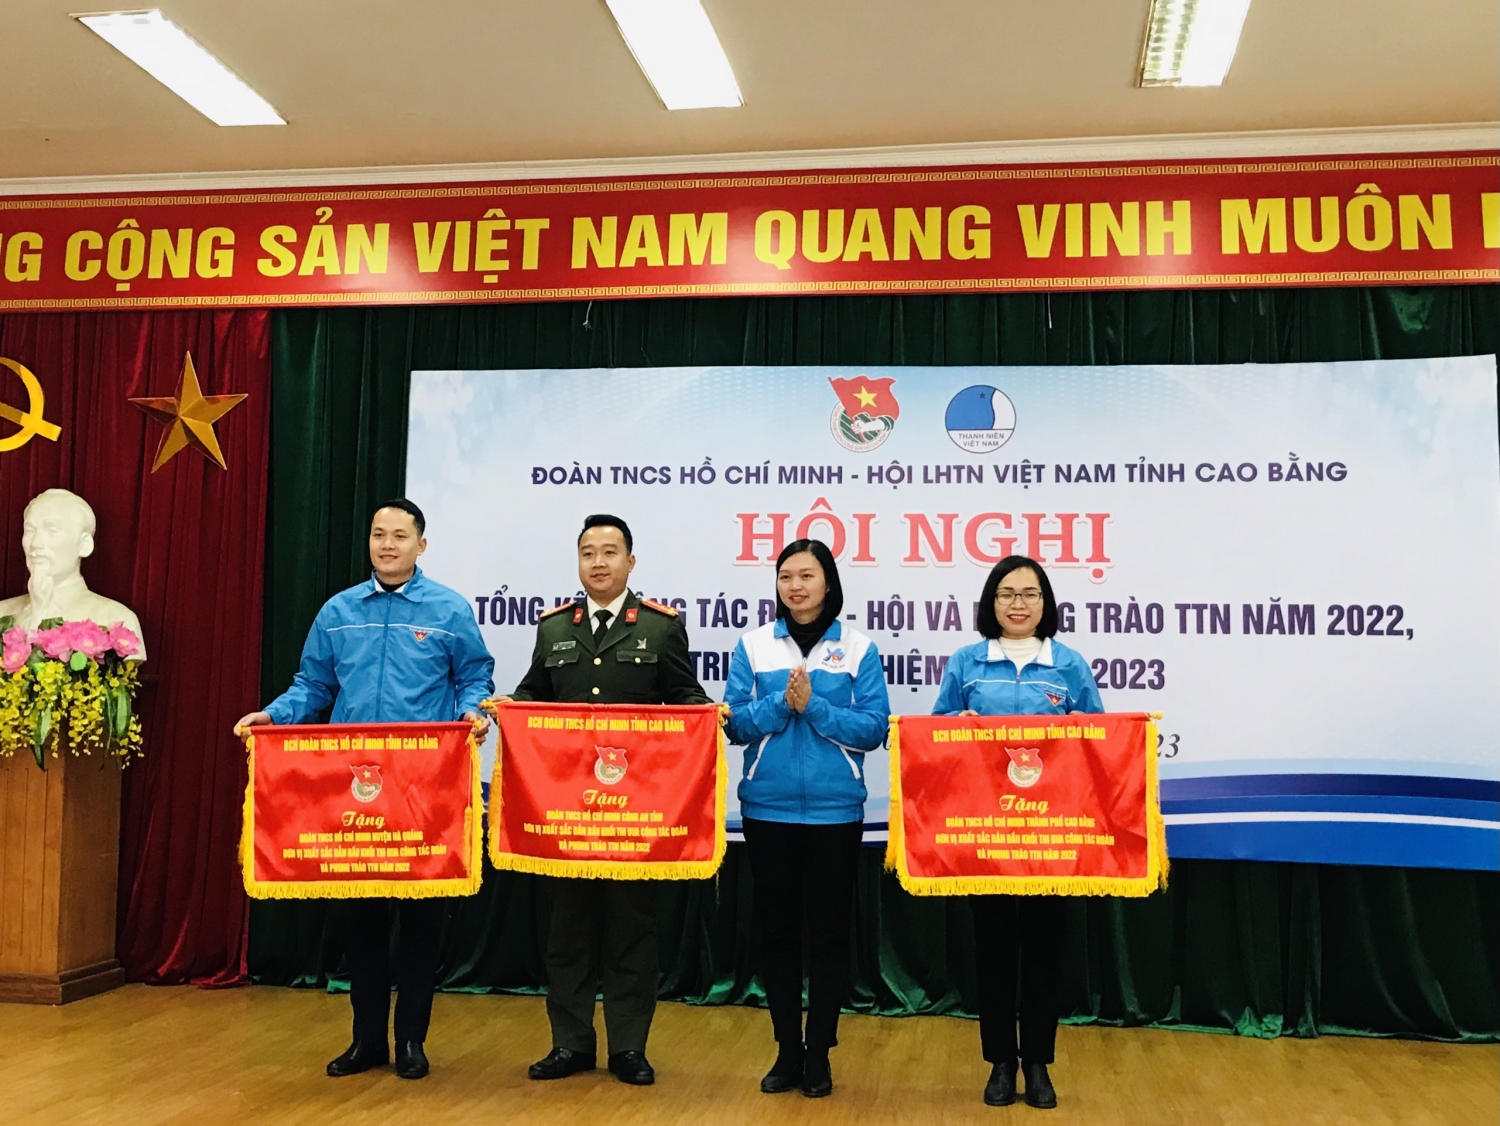 Đ/c Hoàng Hồng Diệu - Bí thư Tỉnh Đoàn tặng cờ cho đơn vị xuất sắc dẫn đầu khối về công tác Đoàn và phong trào TTN năm 2022.